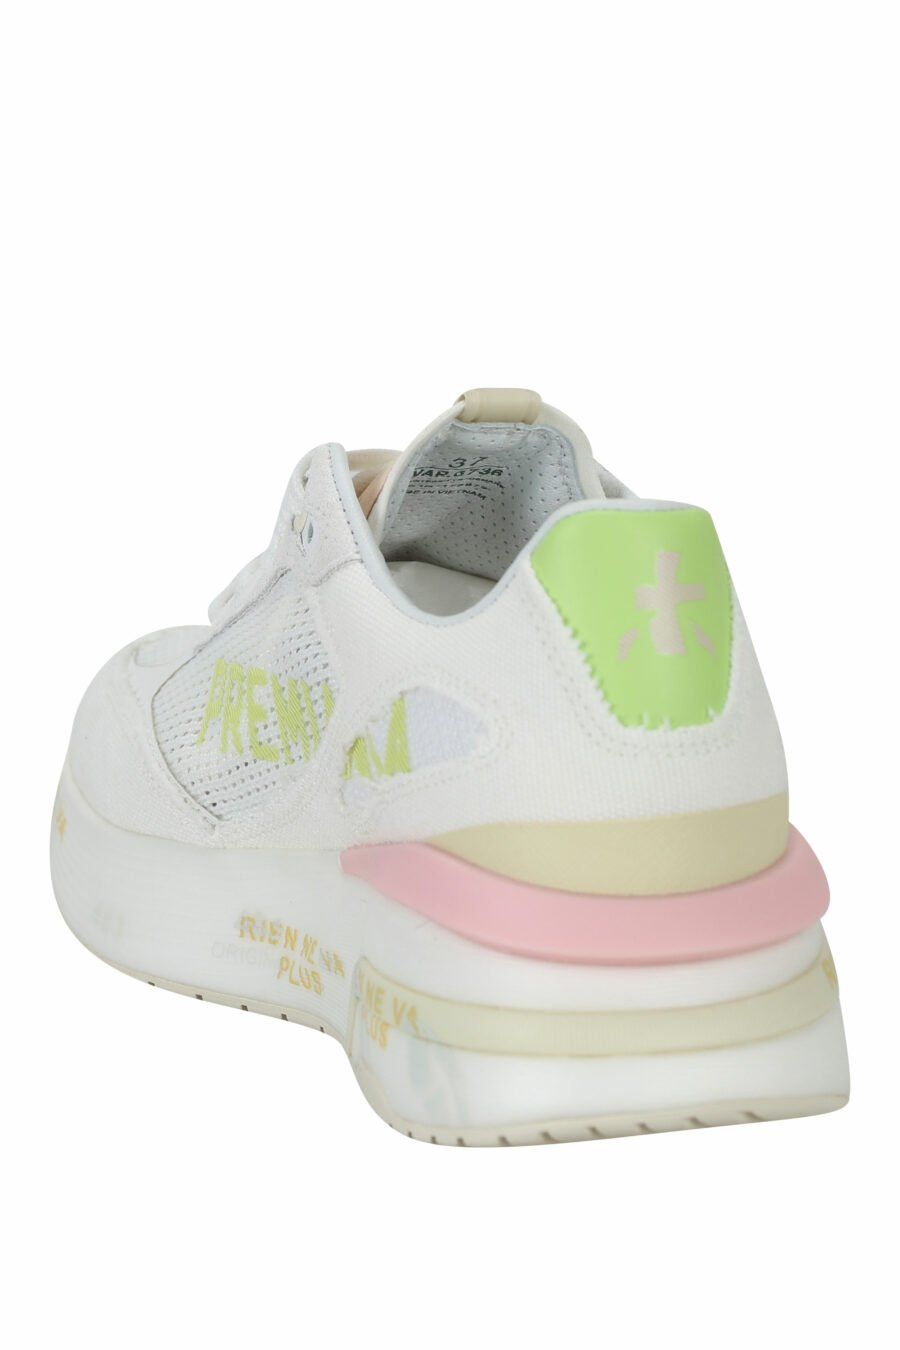 Zapatillas blancas con detalles en rosa y verde "MOERUND 6736" - 8053680381015 3